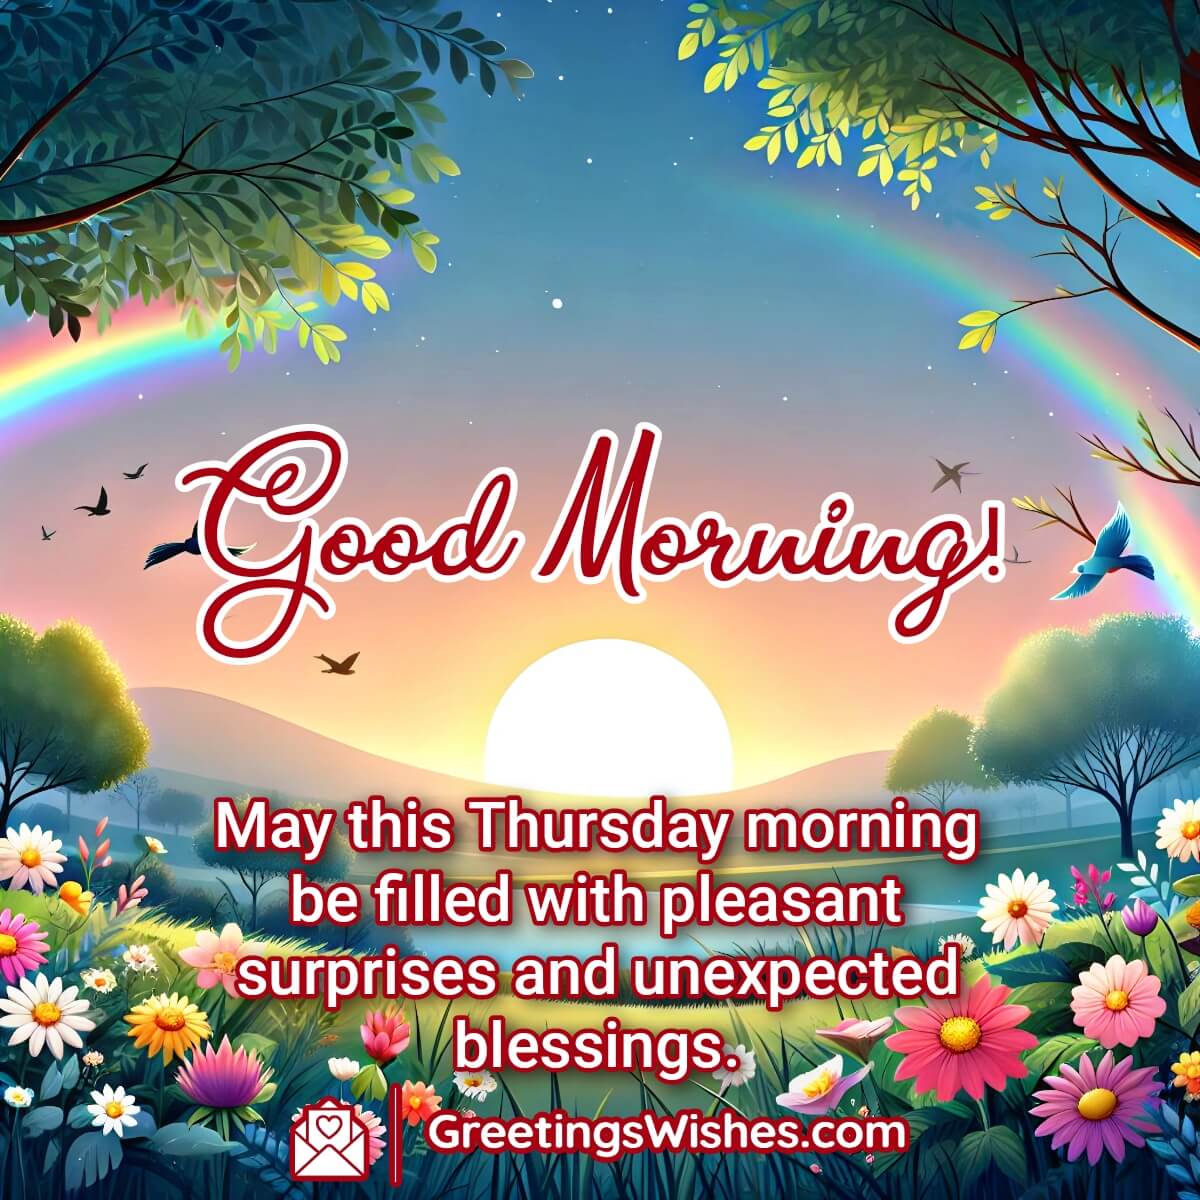 Good Morning Morning Wishes For Thursday